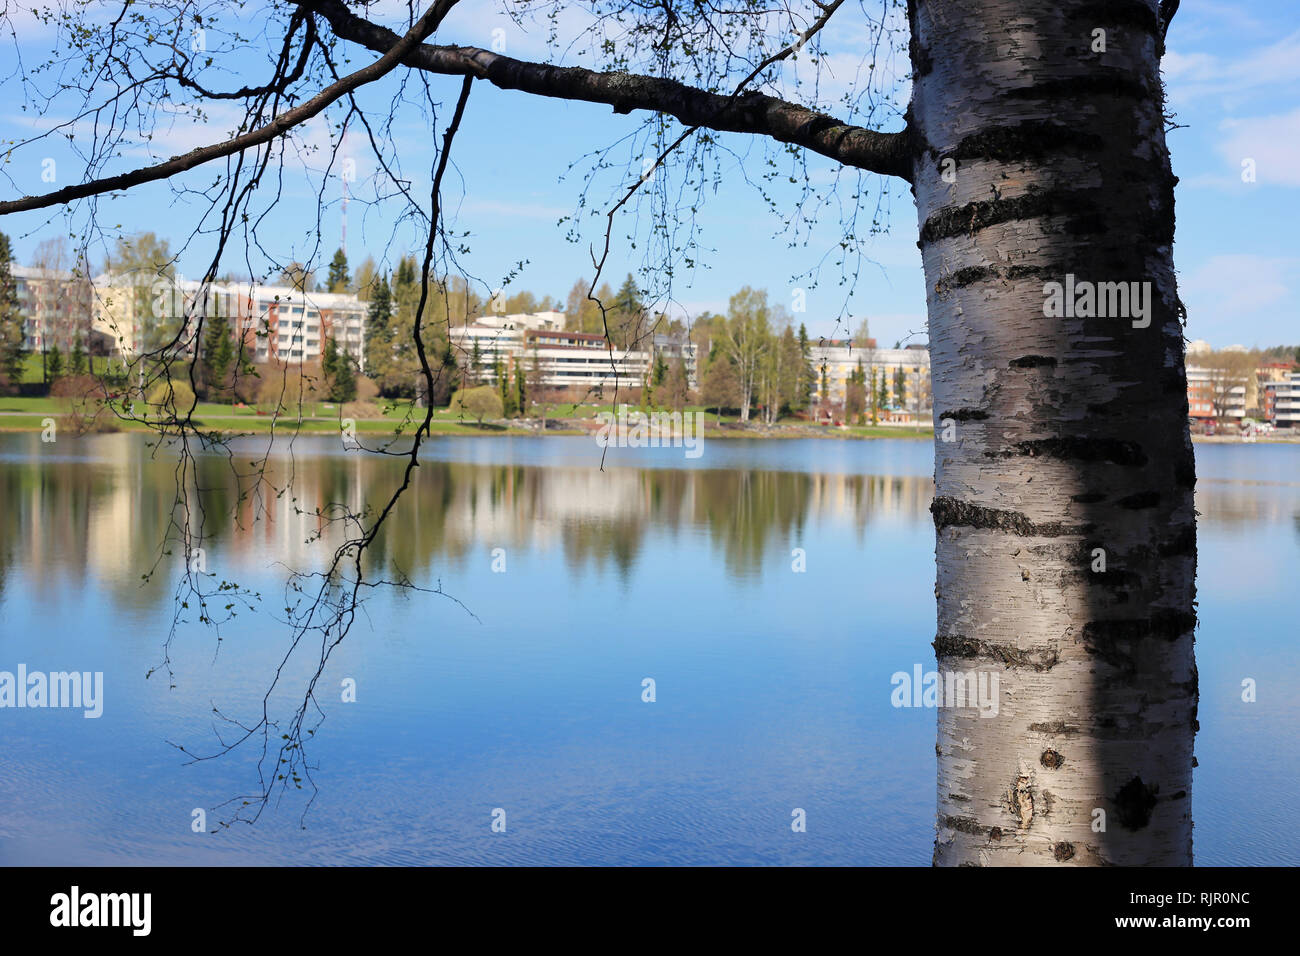 Eine Nahaufnahme der finnischen Natur im Frühling. Schönen Baum und seine Äste vor einem ruhigen See mit schönen Reflexionen fotografiert. Stockfoto